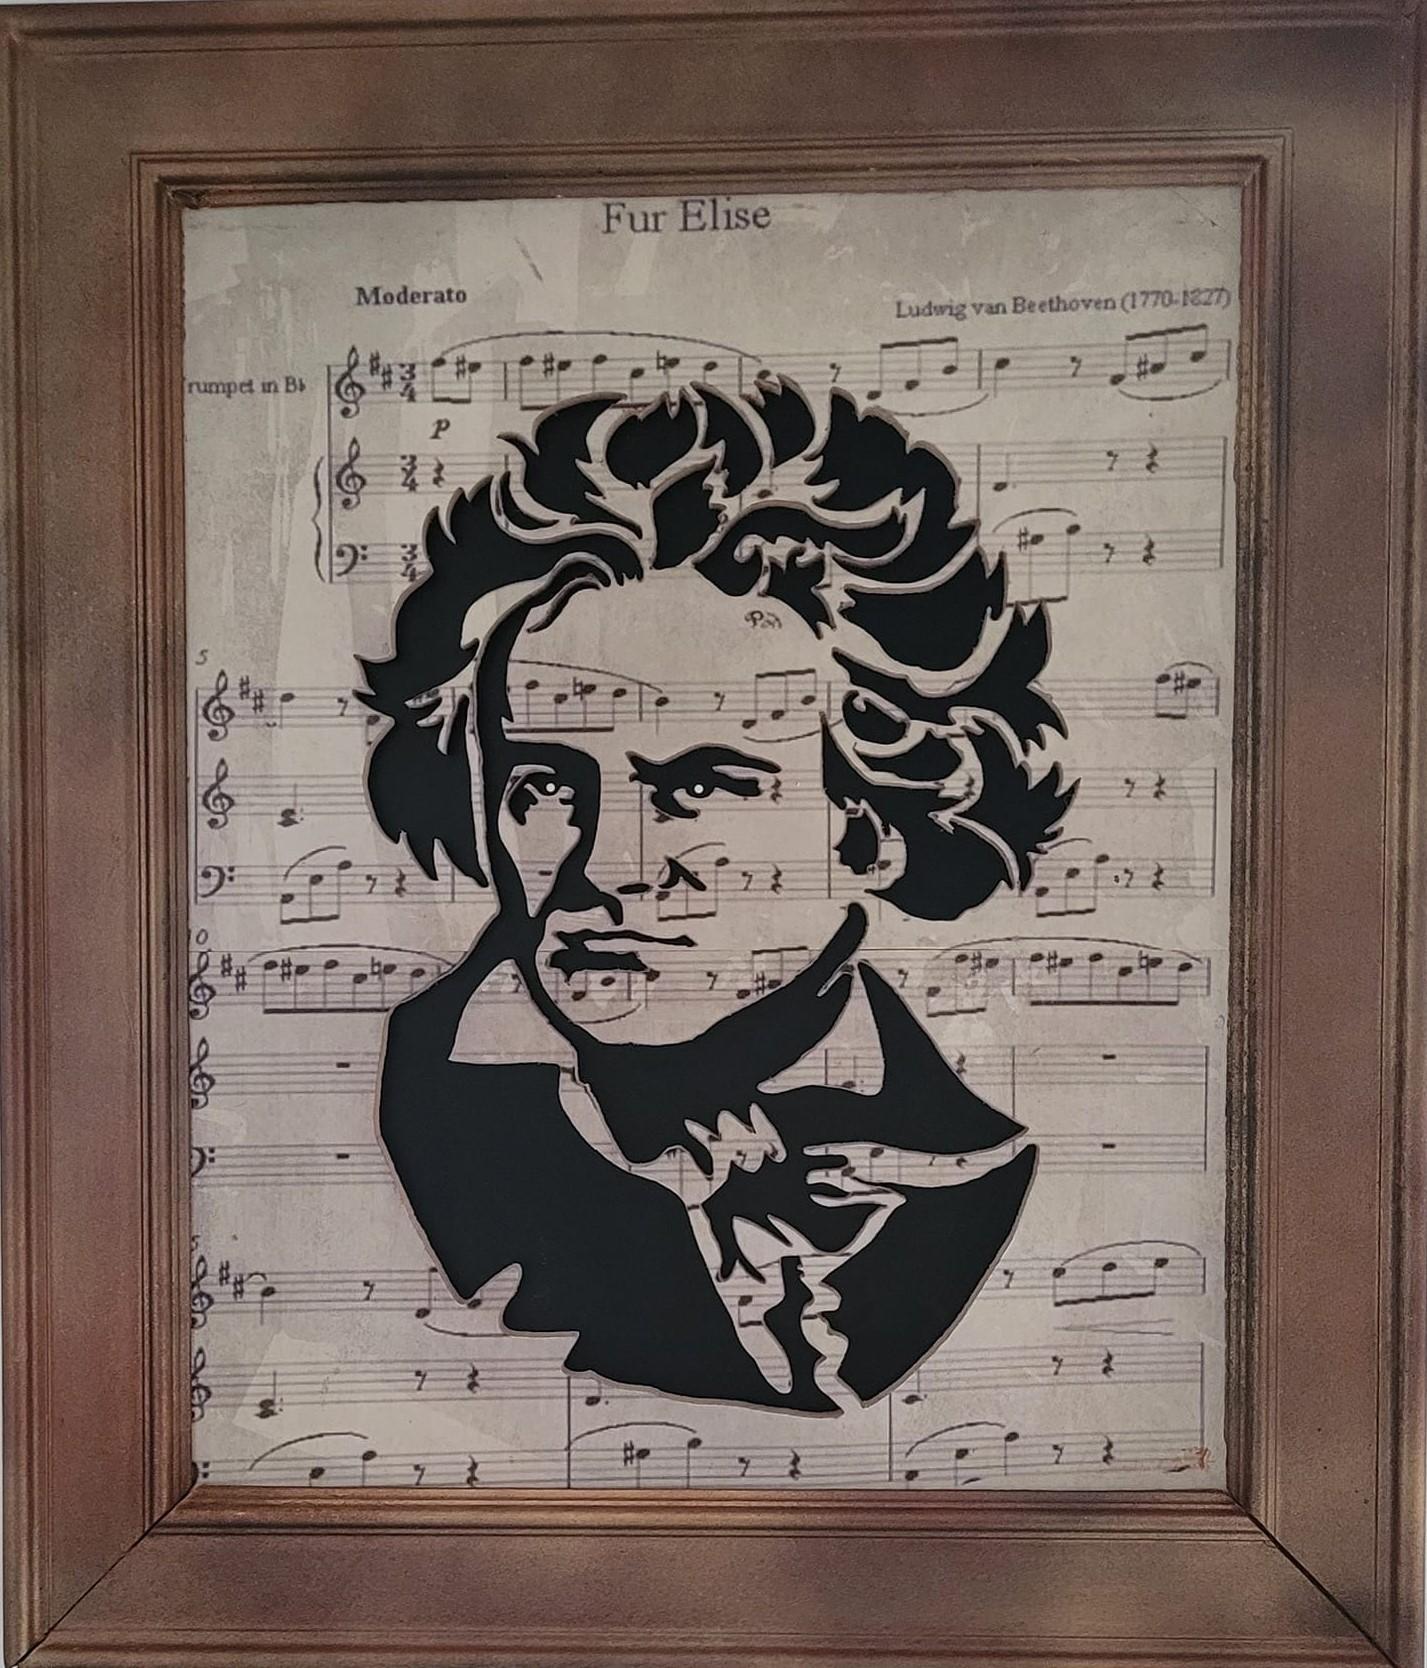 Beethoven1